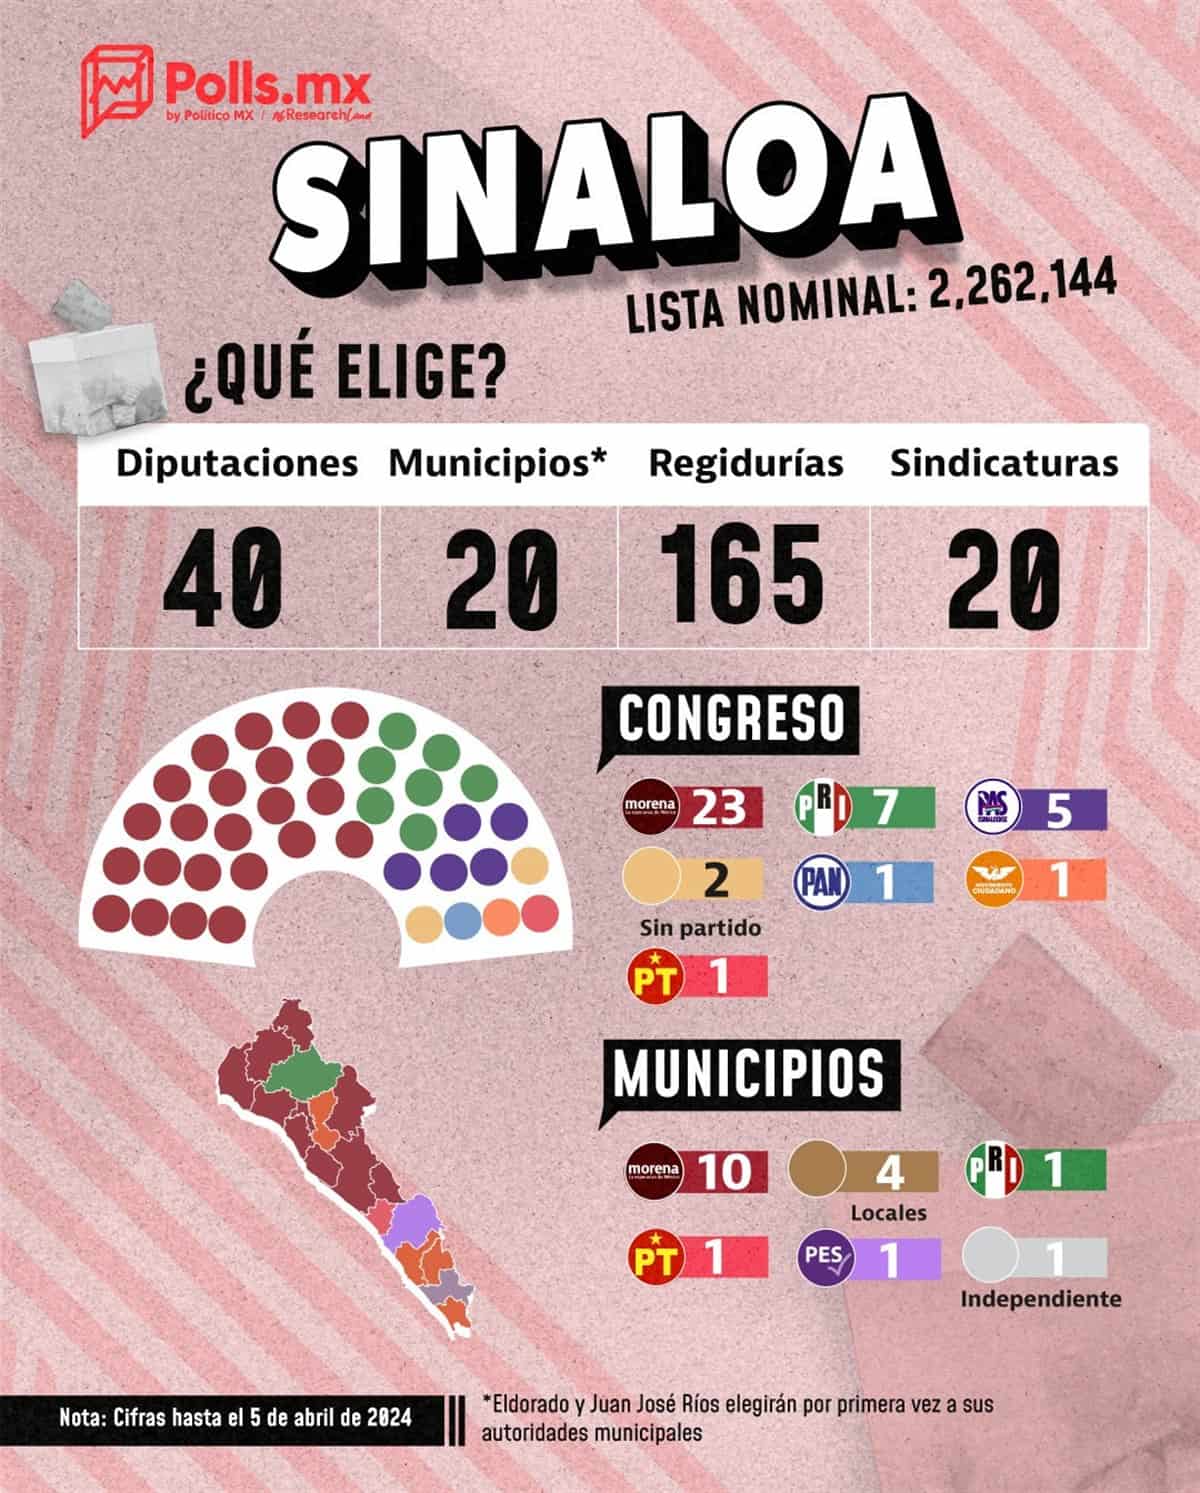 Eldorado y Juan José Ríos elegirán por primera vez Alcalde